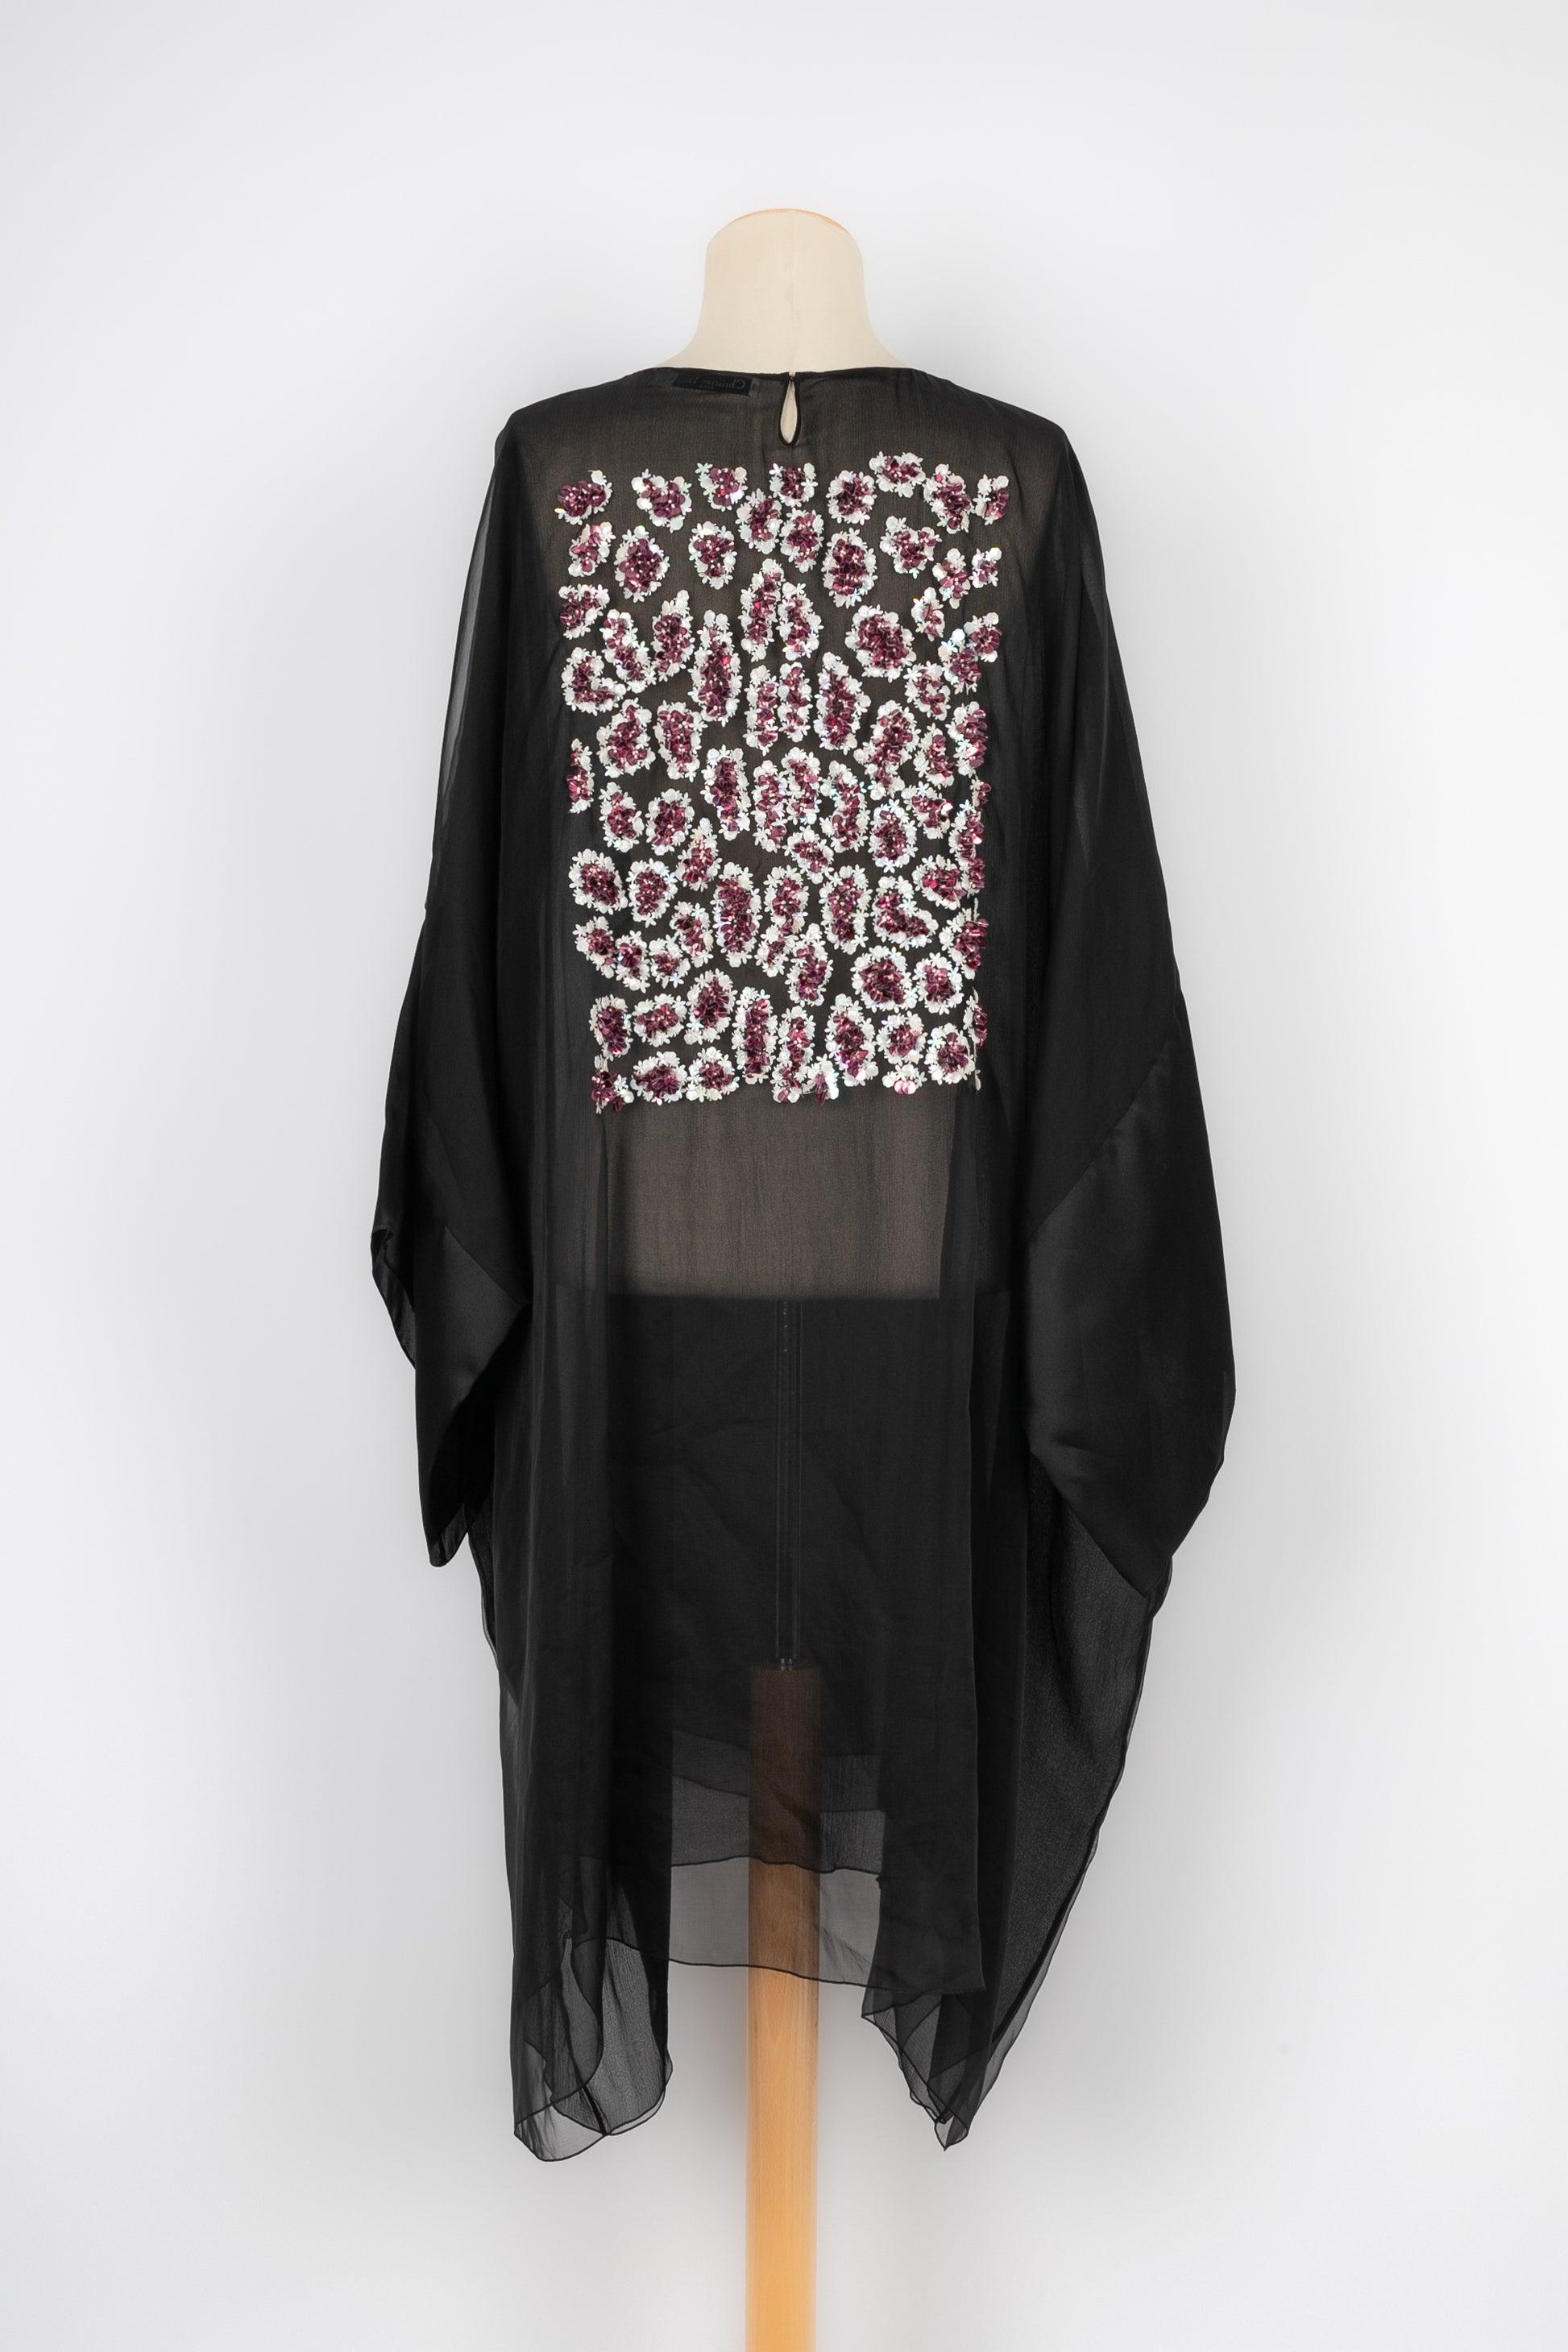 Christian Dior Transparent Black Dress In Excellent Condition For Sale In SAINT-OUEN-SUR-SEINE, FR